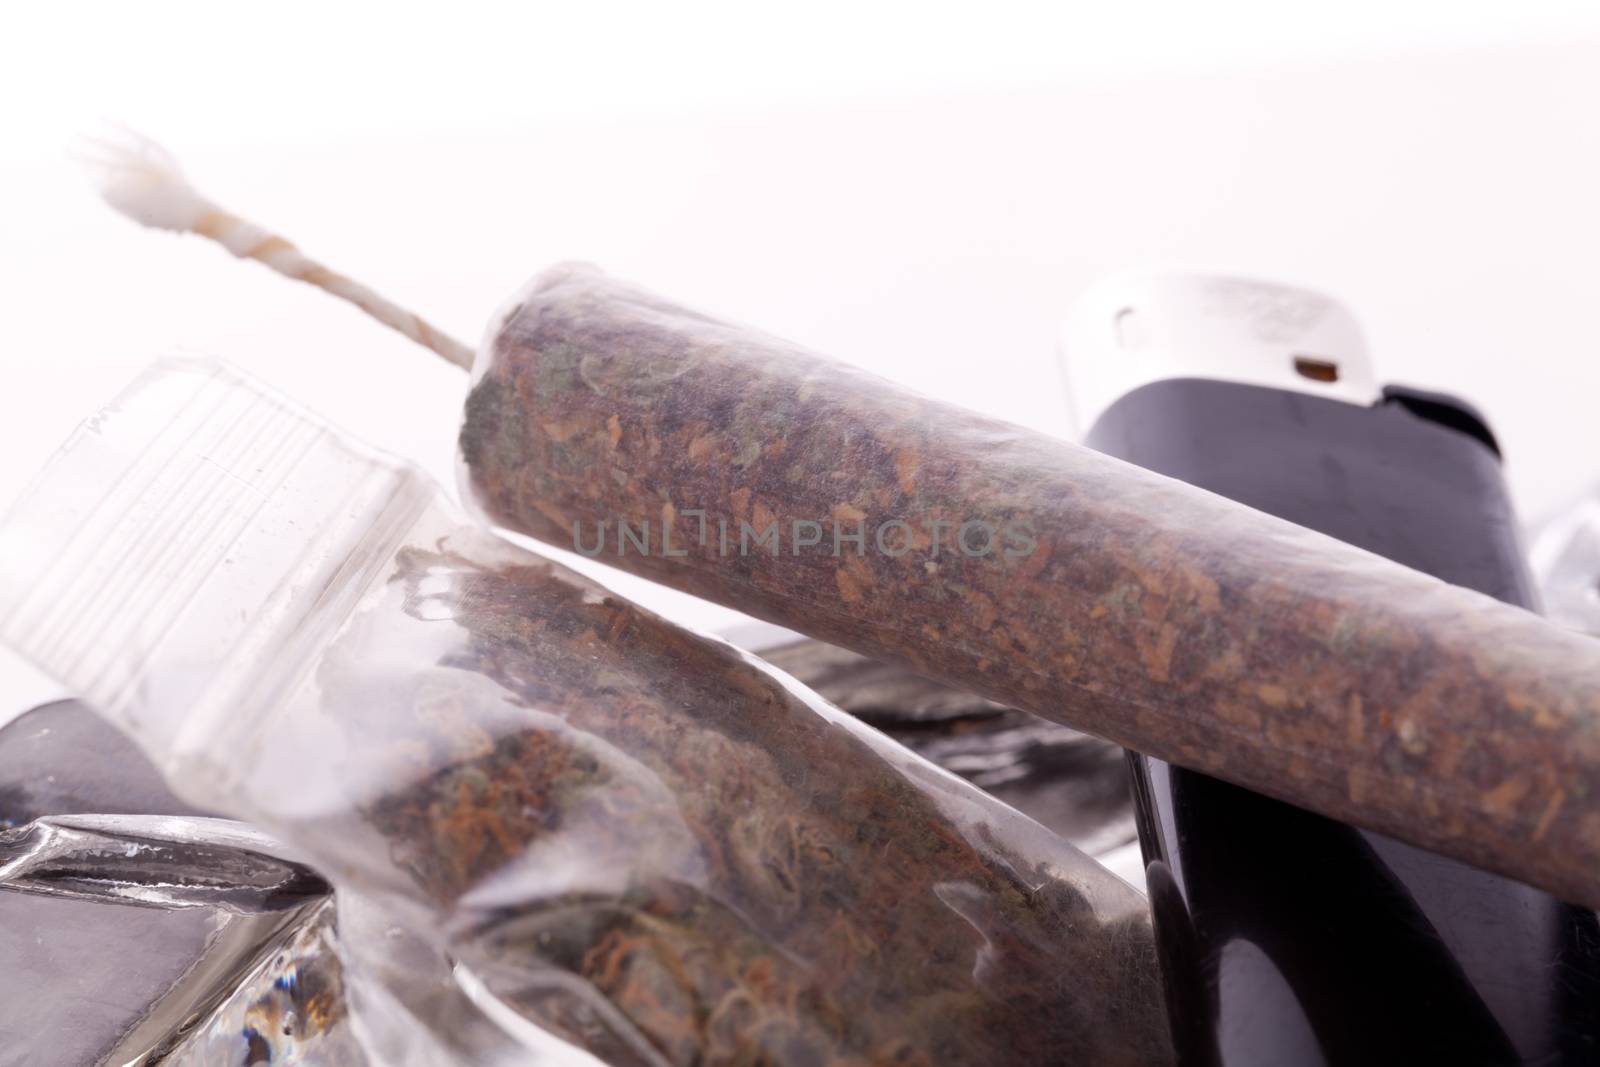 Close up of marijuana and smoking paraphernalia by juniart